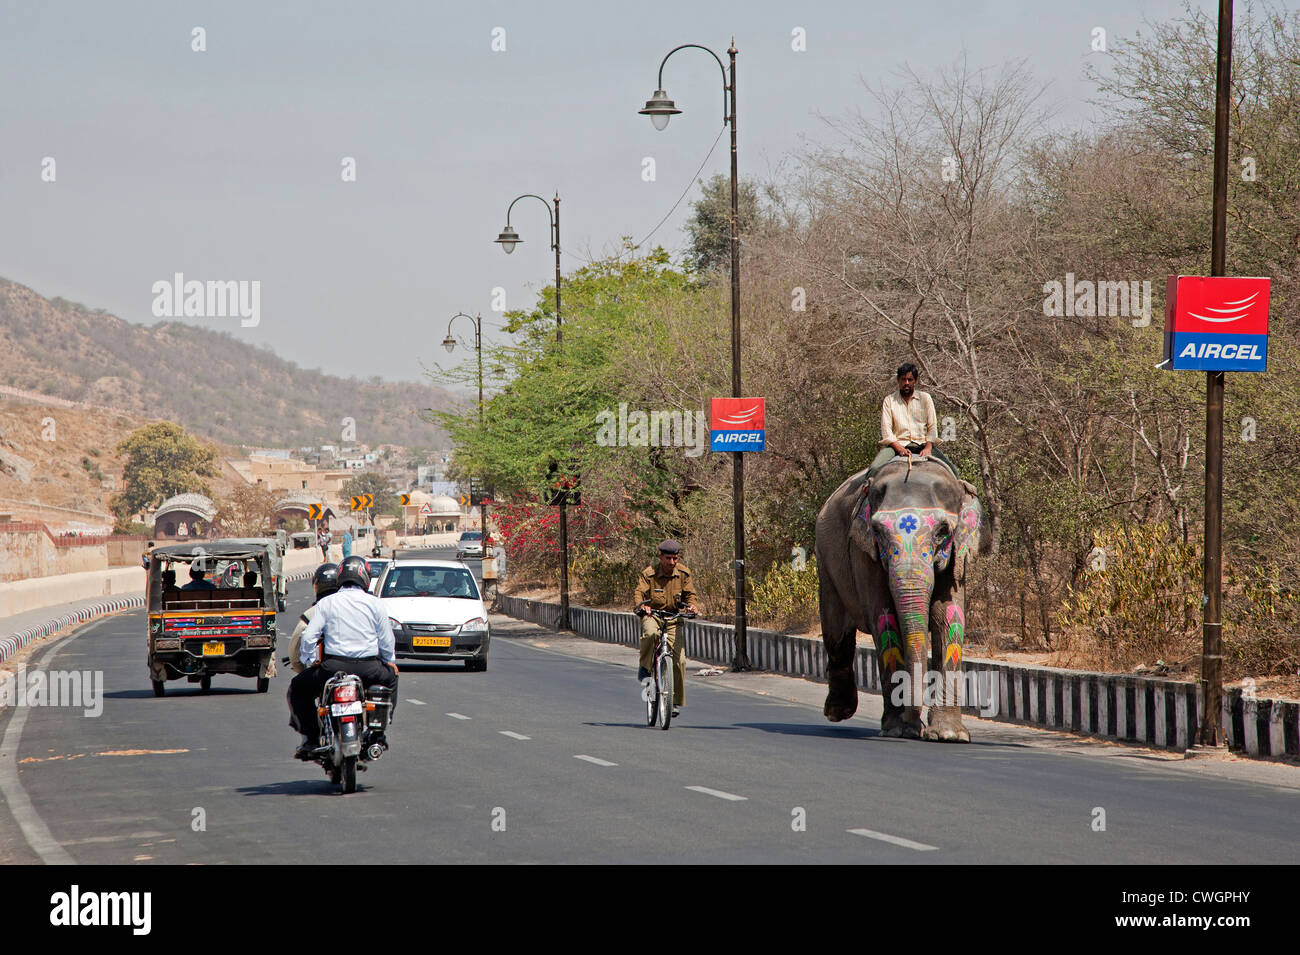 Mahout caballo decorado elefante indio en la carretera entre el tráfico en Jaipur, Rajasthan, India Foto de stock